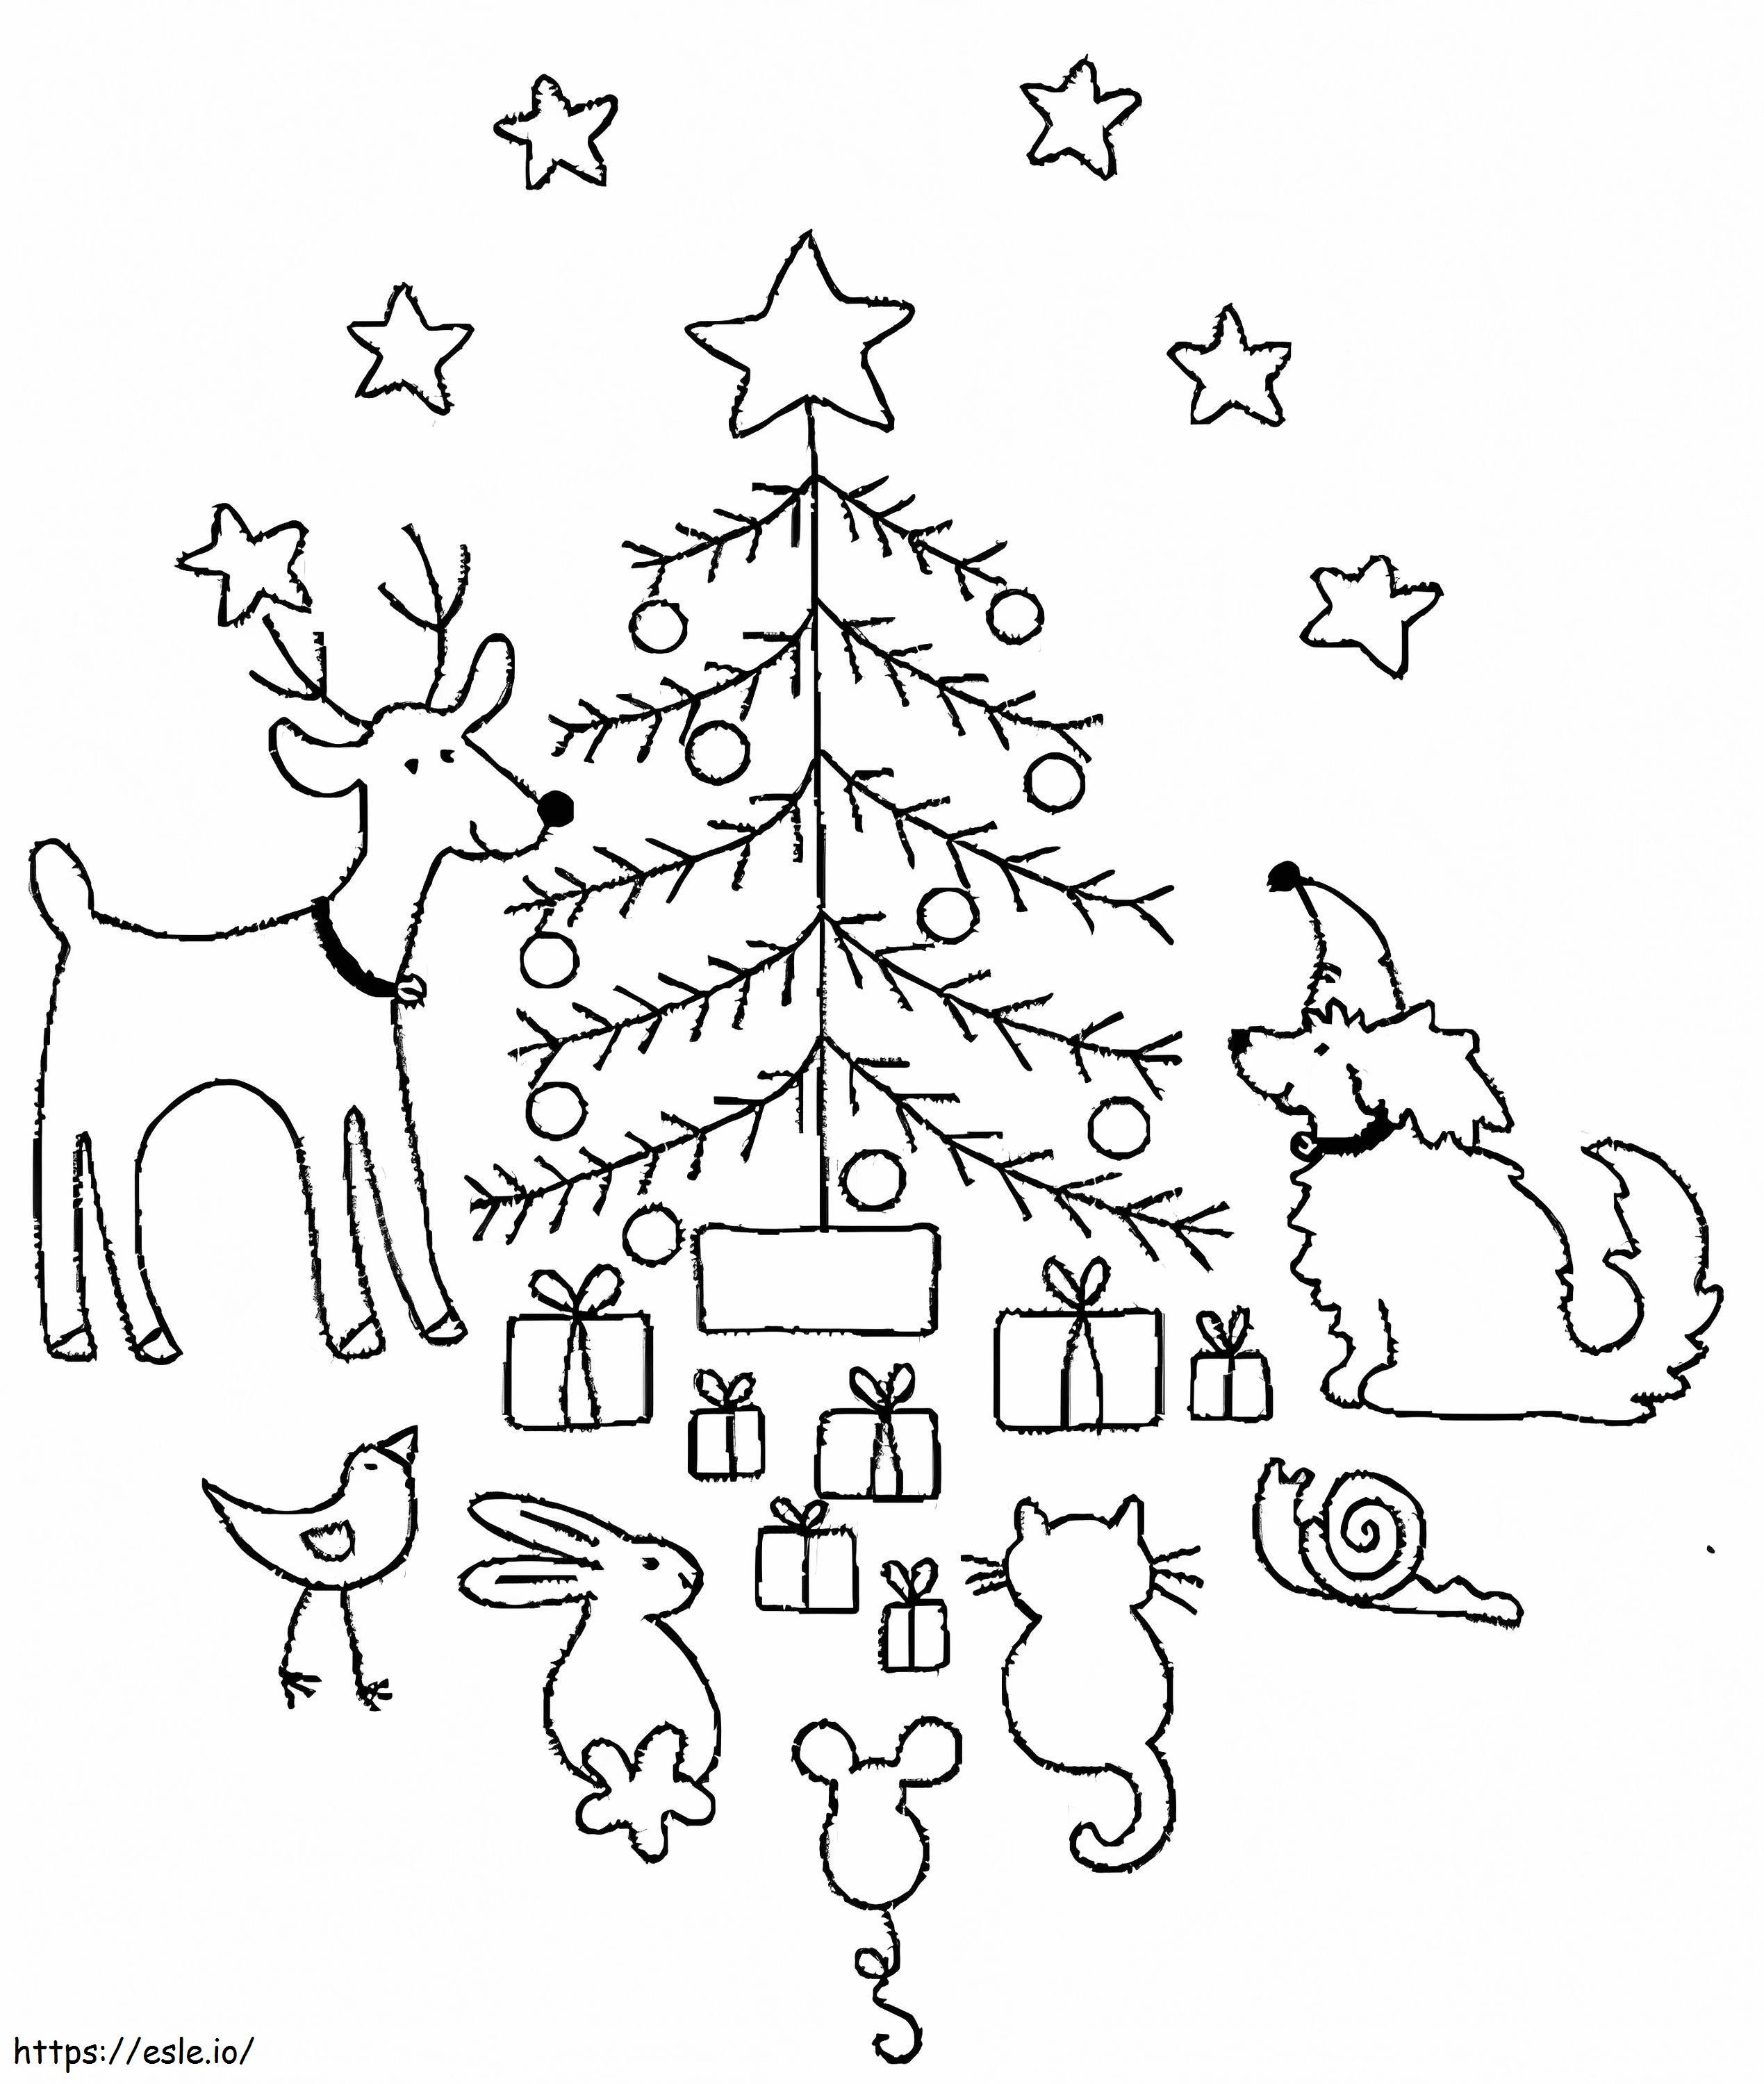 Tiere und Weihnachtsbaum ausmalbilder